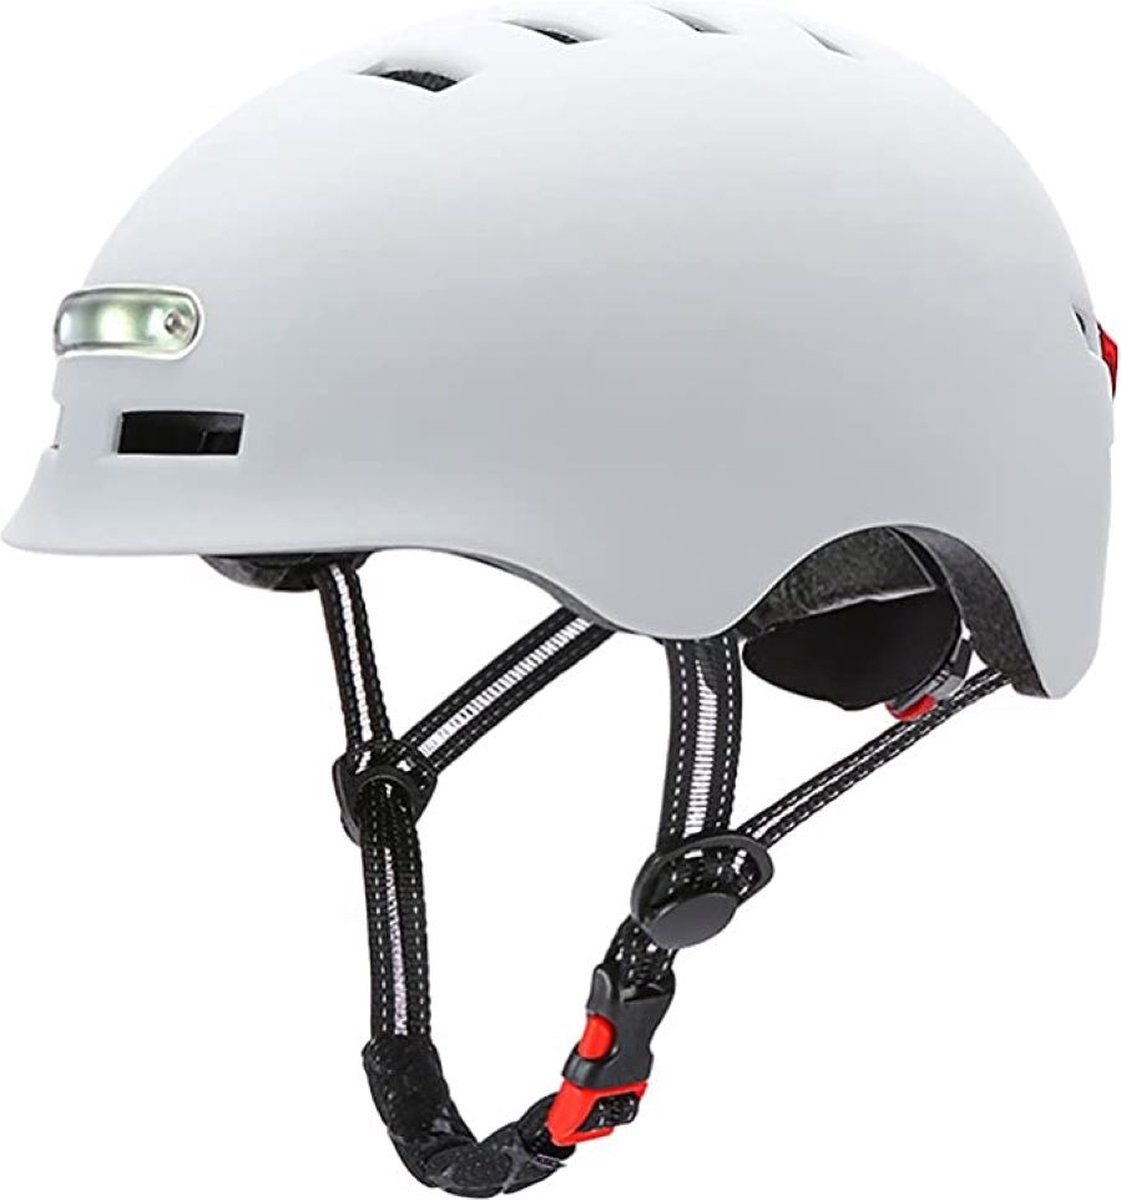 Fietshelm met voor- en achterlicht|LED licht |SMART helm|, fiets, step| Maat = M